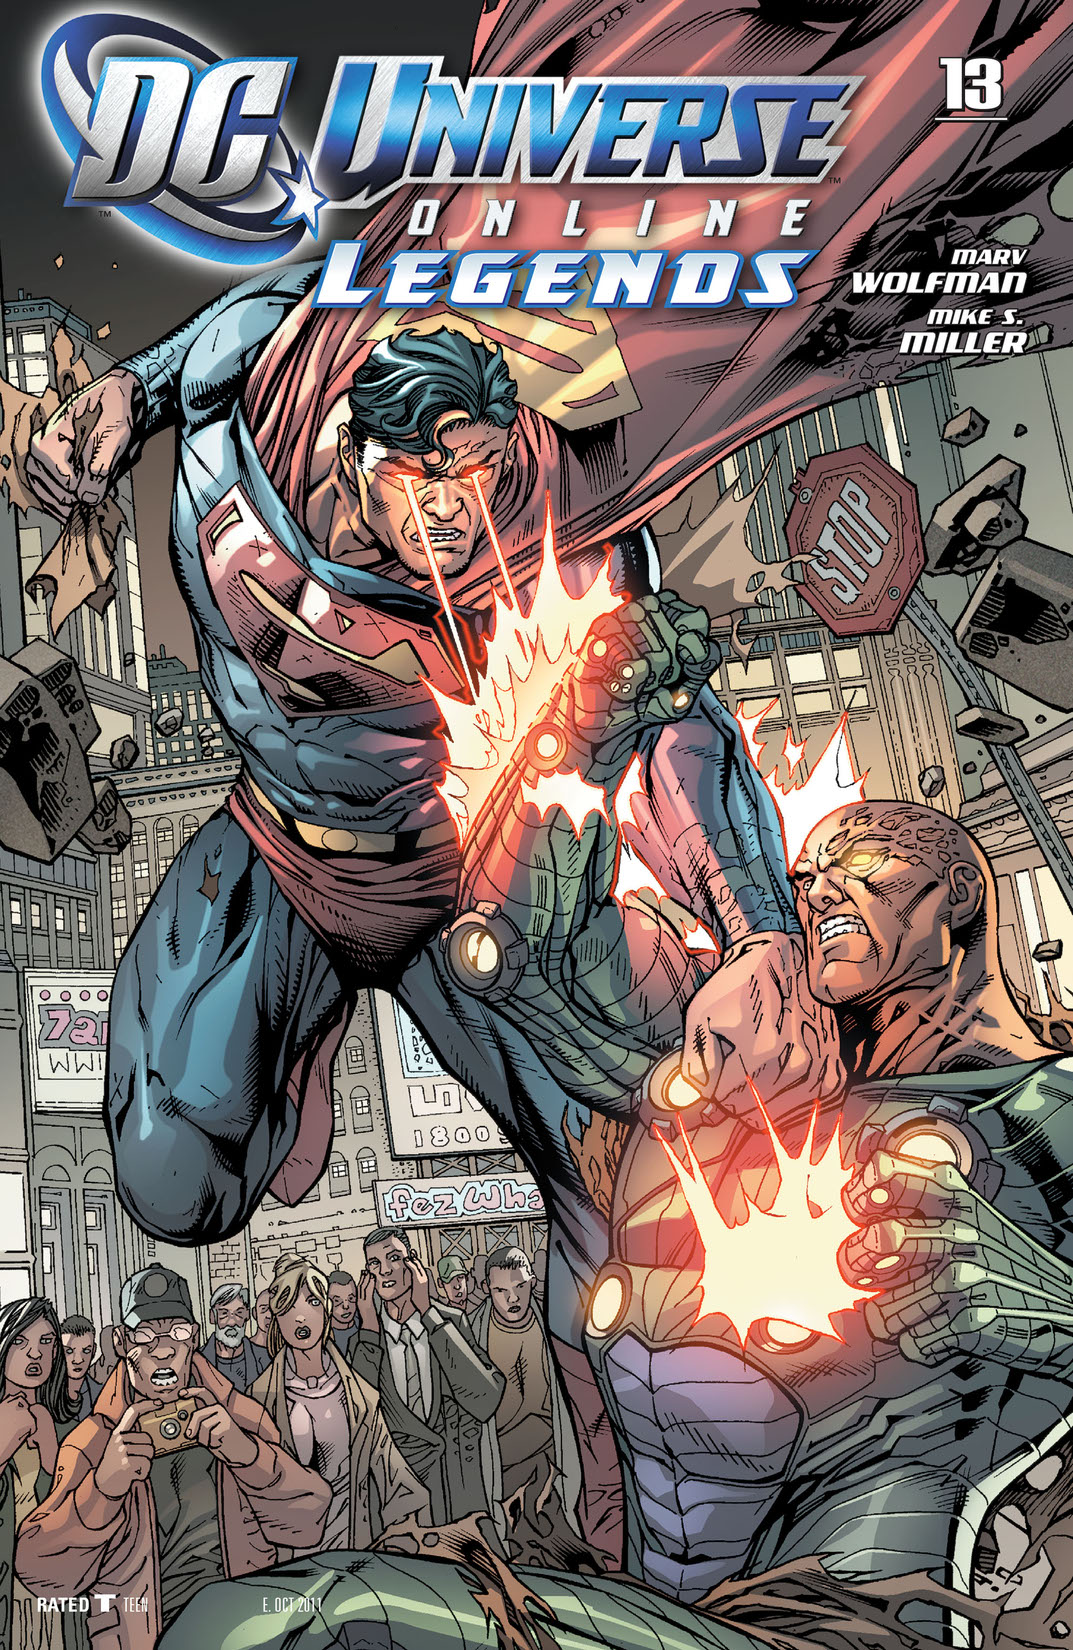 DC Universe Online Legends #13 preview images